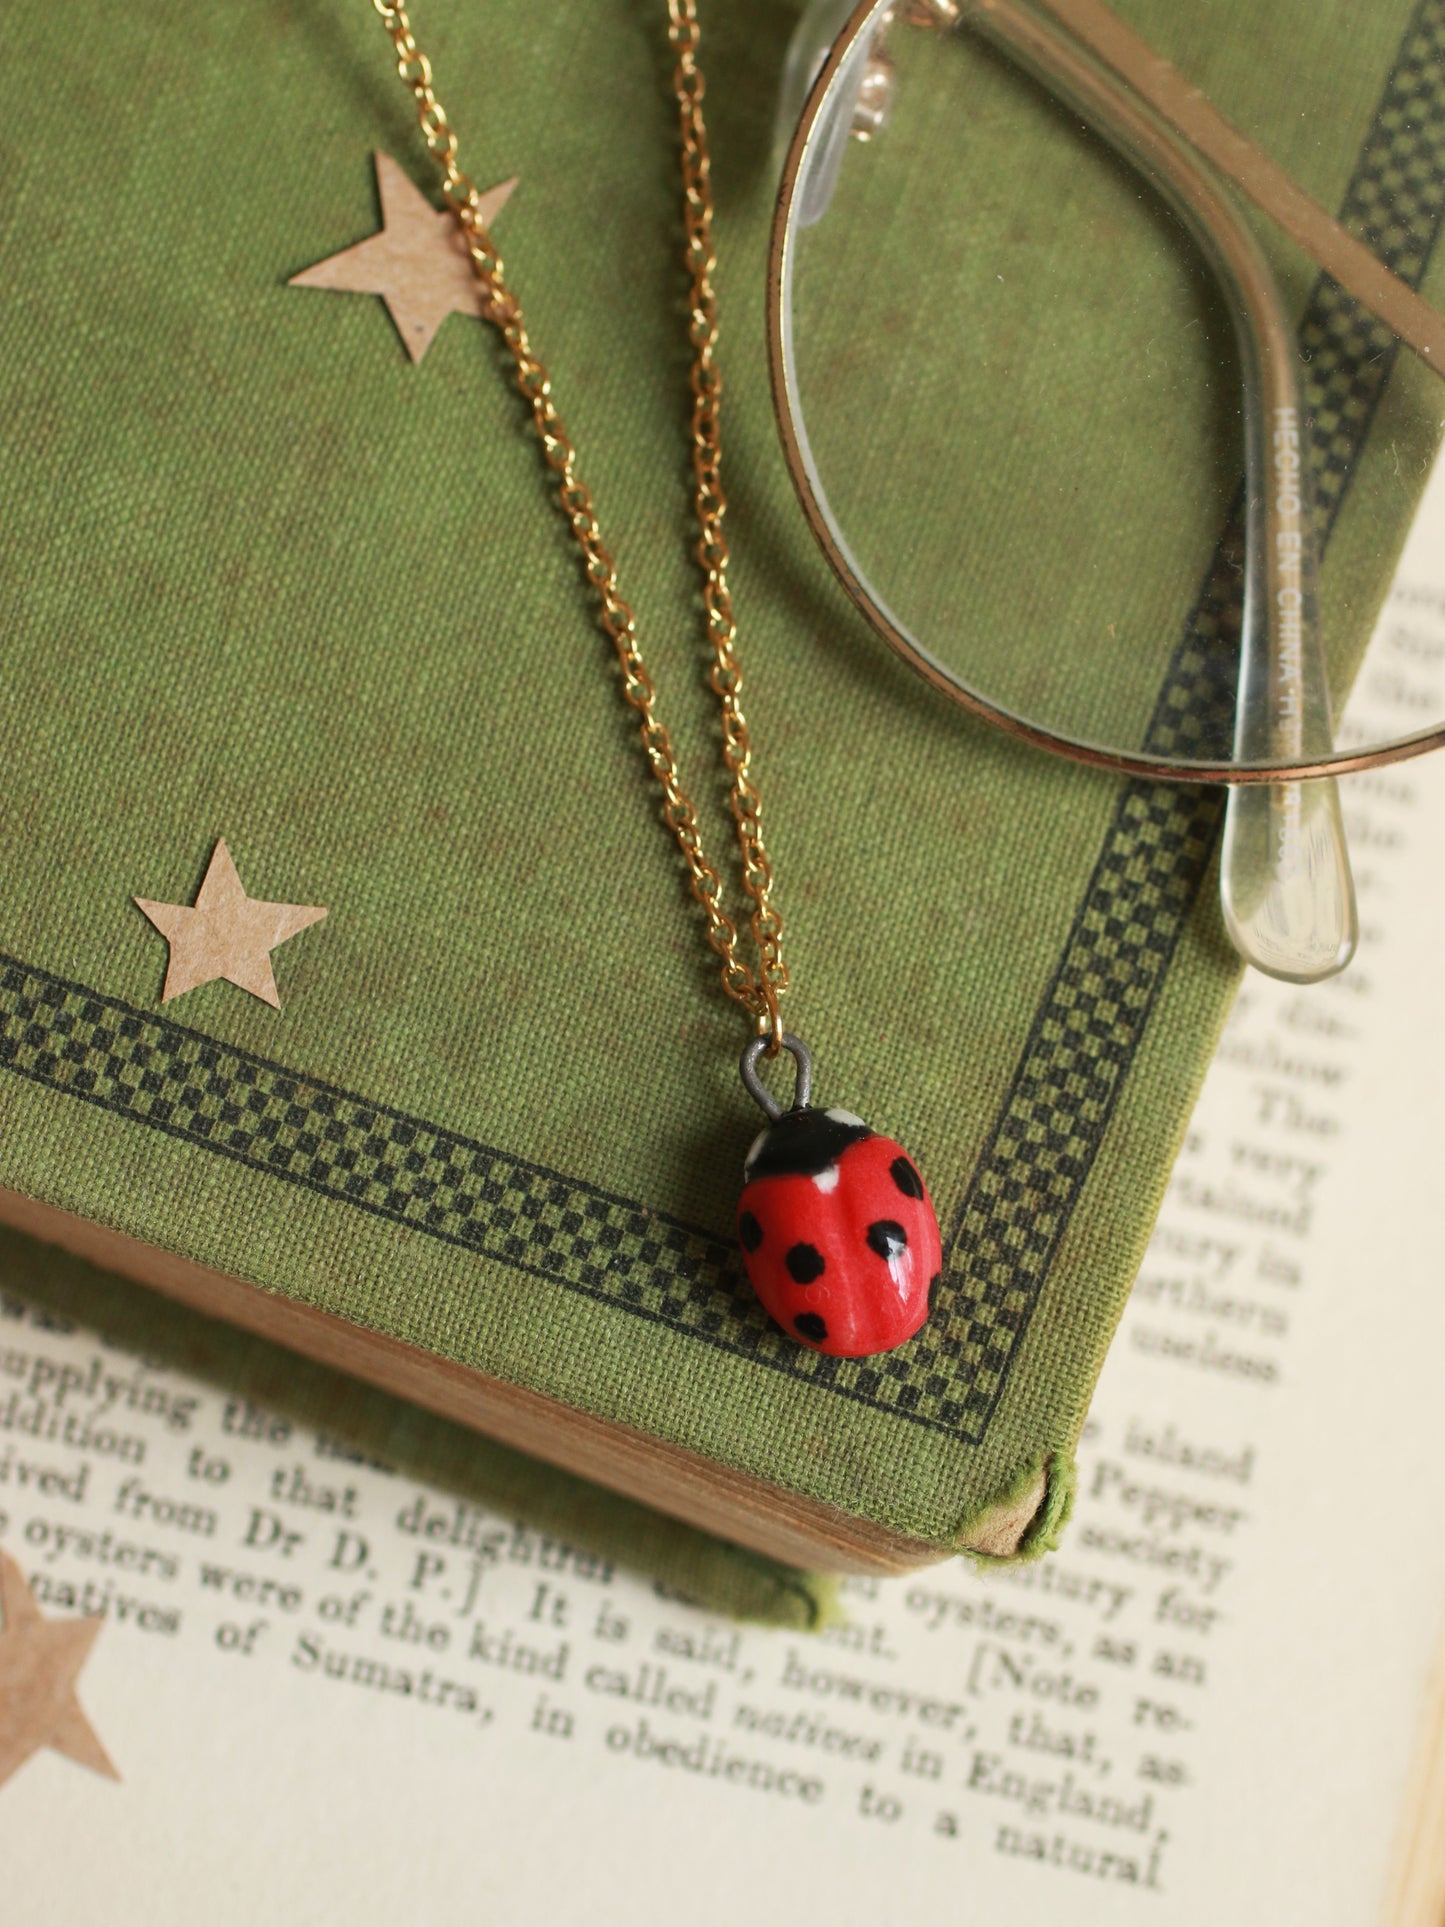 Ladybug necklace